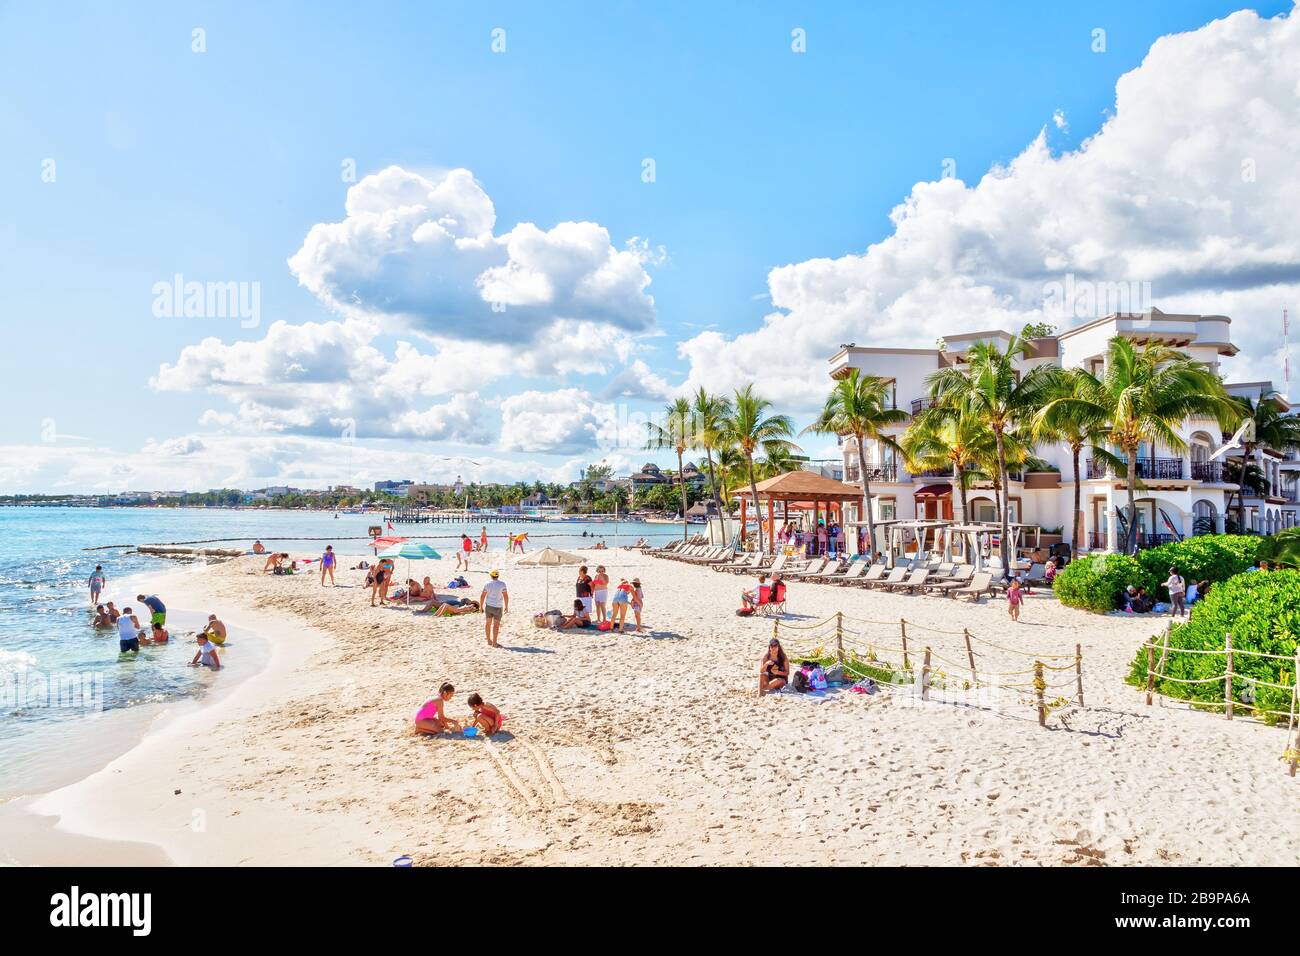 Playa del Carmen, Mexiko - 26. Dezember 2019: Überfüllter Strand voller Menschen, die an der Playa del Carmen in der Riviera Maya in der Karibik spielen und sich sonnen Stockfoto